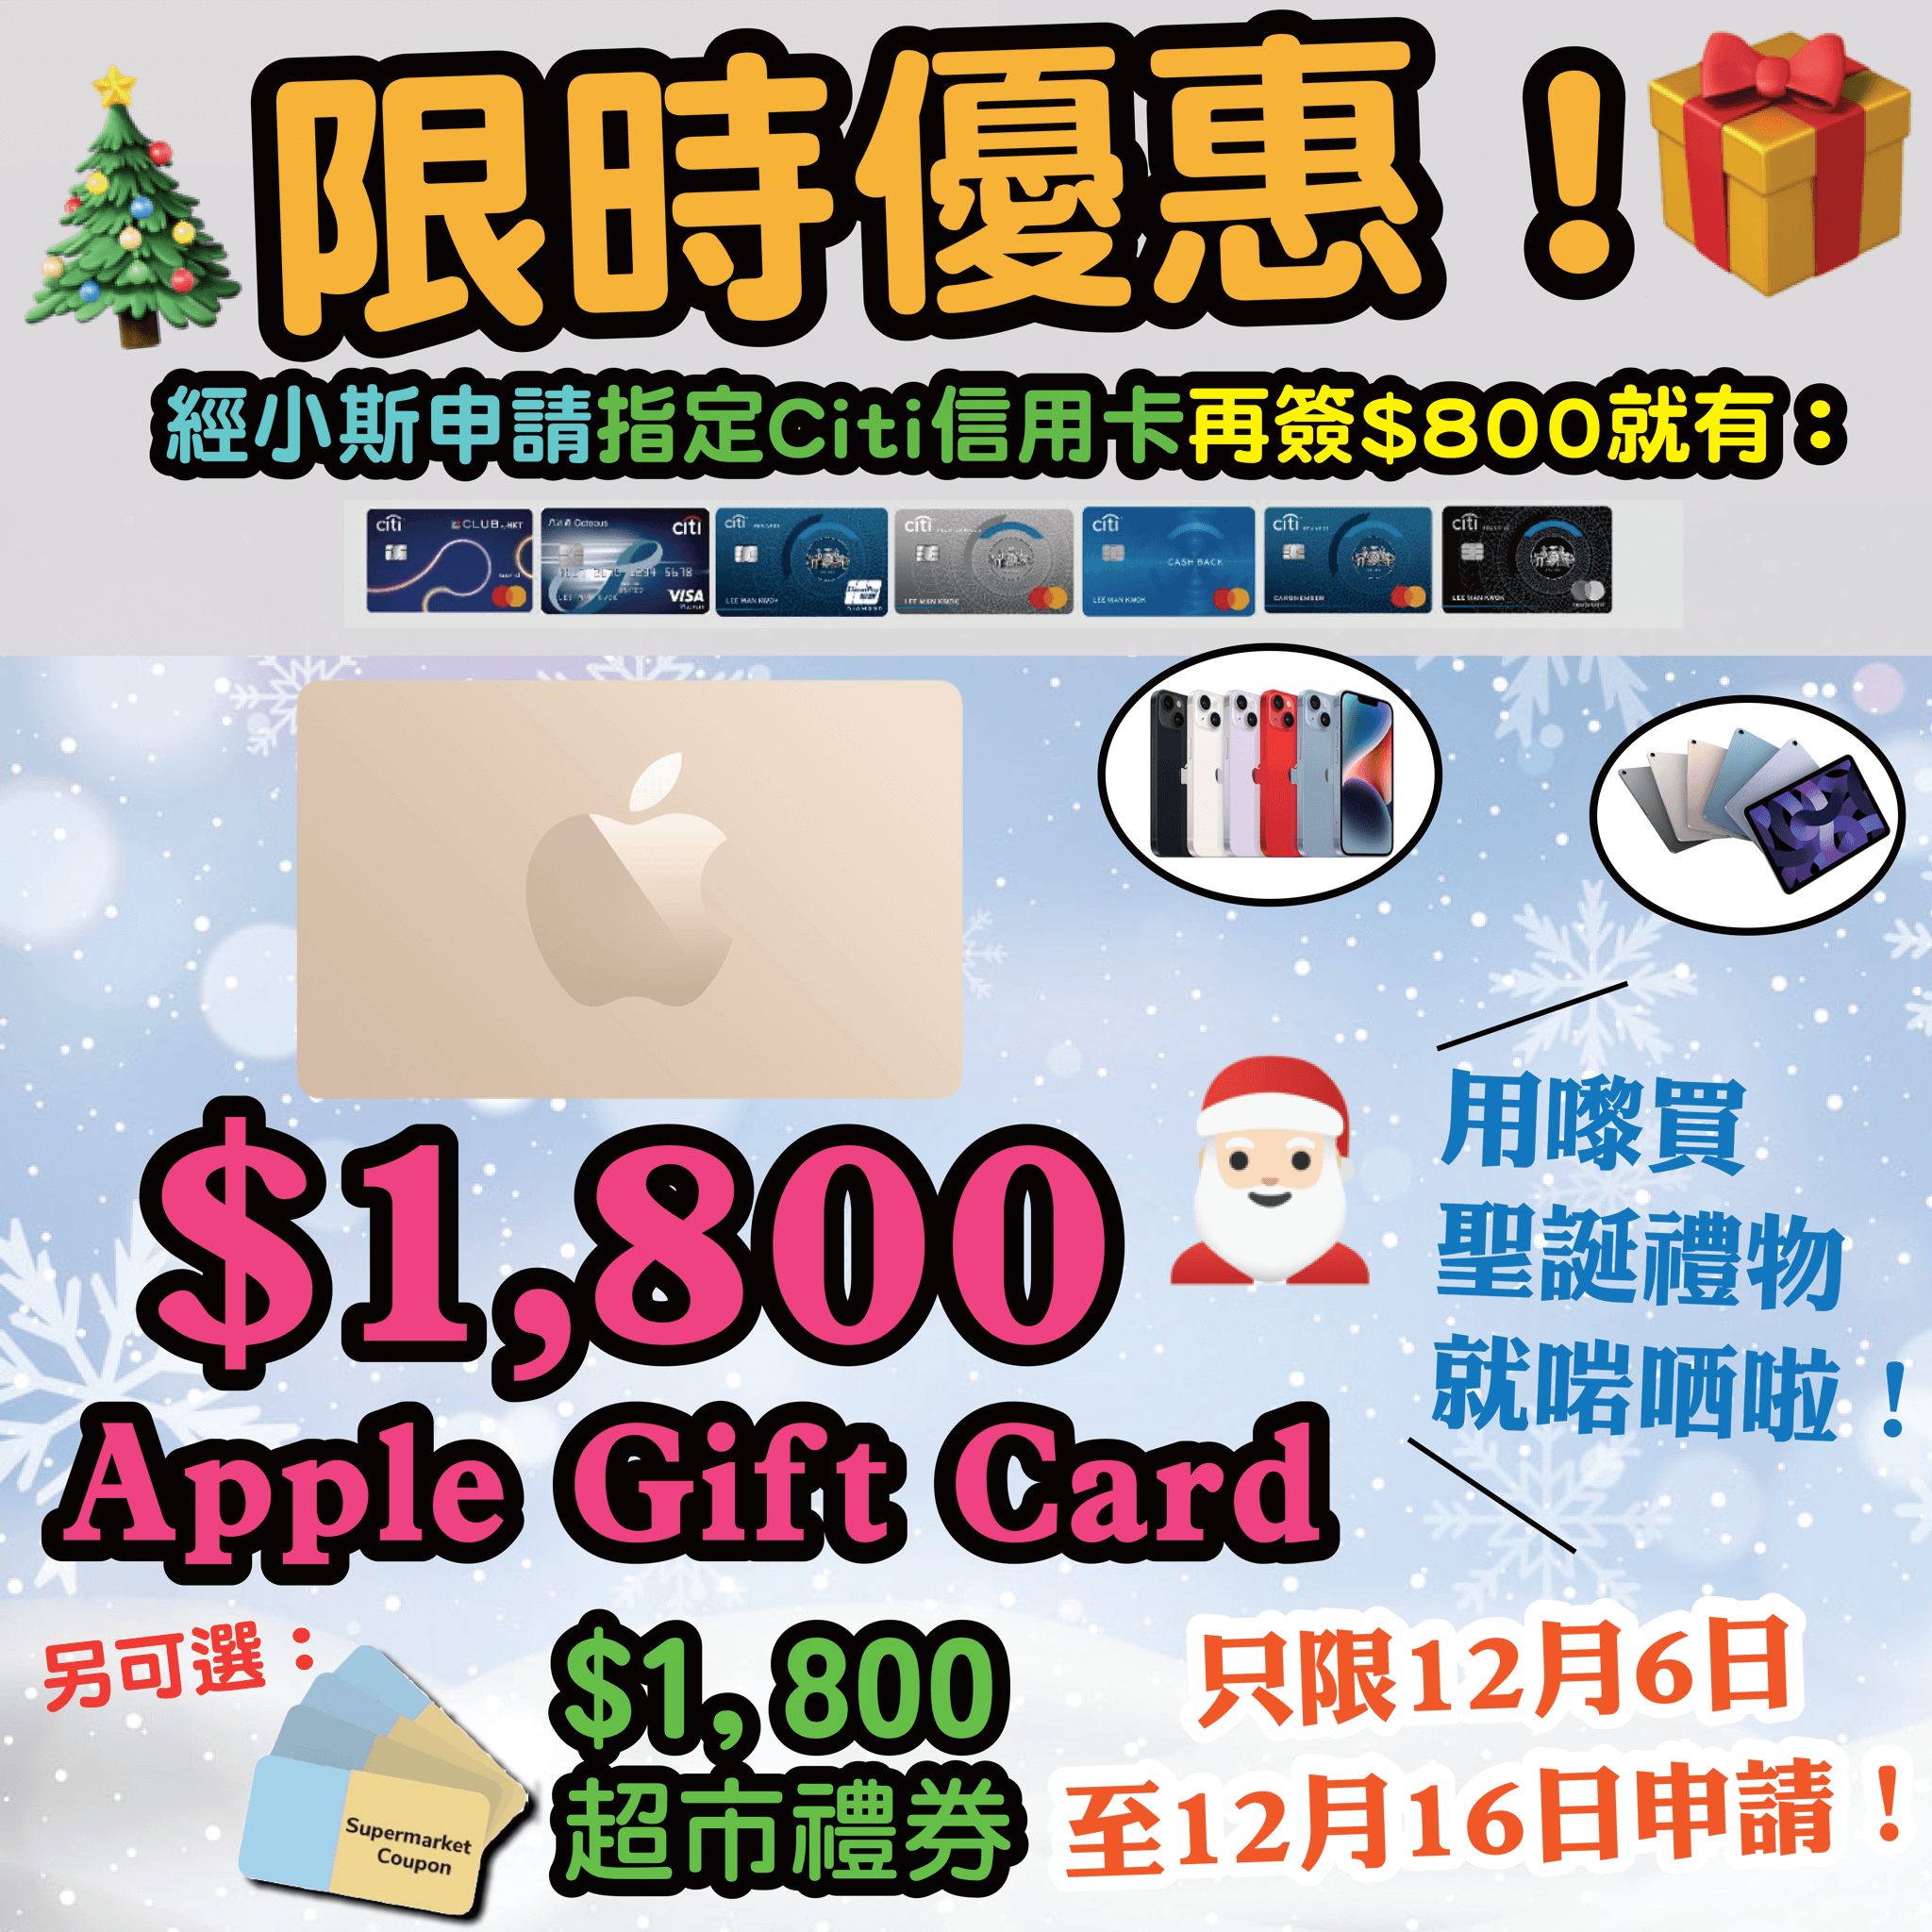 【🔥🔥🔥限時優惠❗送$1,800 Apple Gift Card 或 超市禮券❗❗用嚟買聖誕禮物就啱哂啦❗🎄】小斯Citi信用卡瘋狂優惠❗❗開卡簽$800就送$1,800 Apple Gift Card 或 超市禮券❗😍😍 】